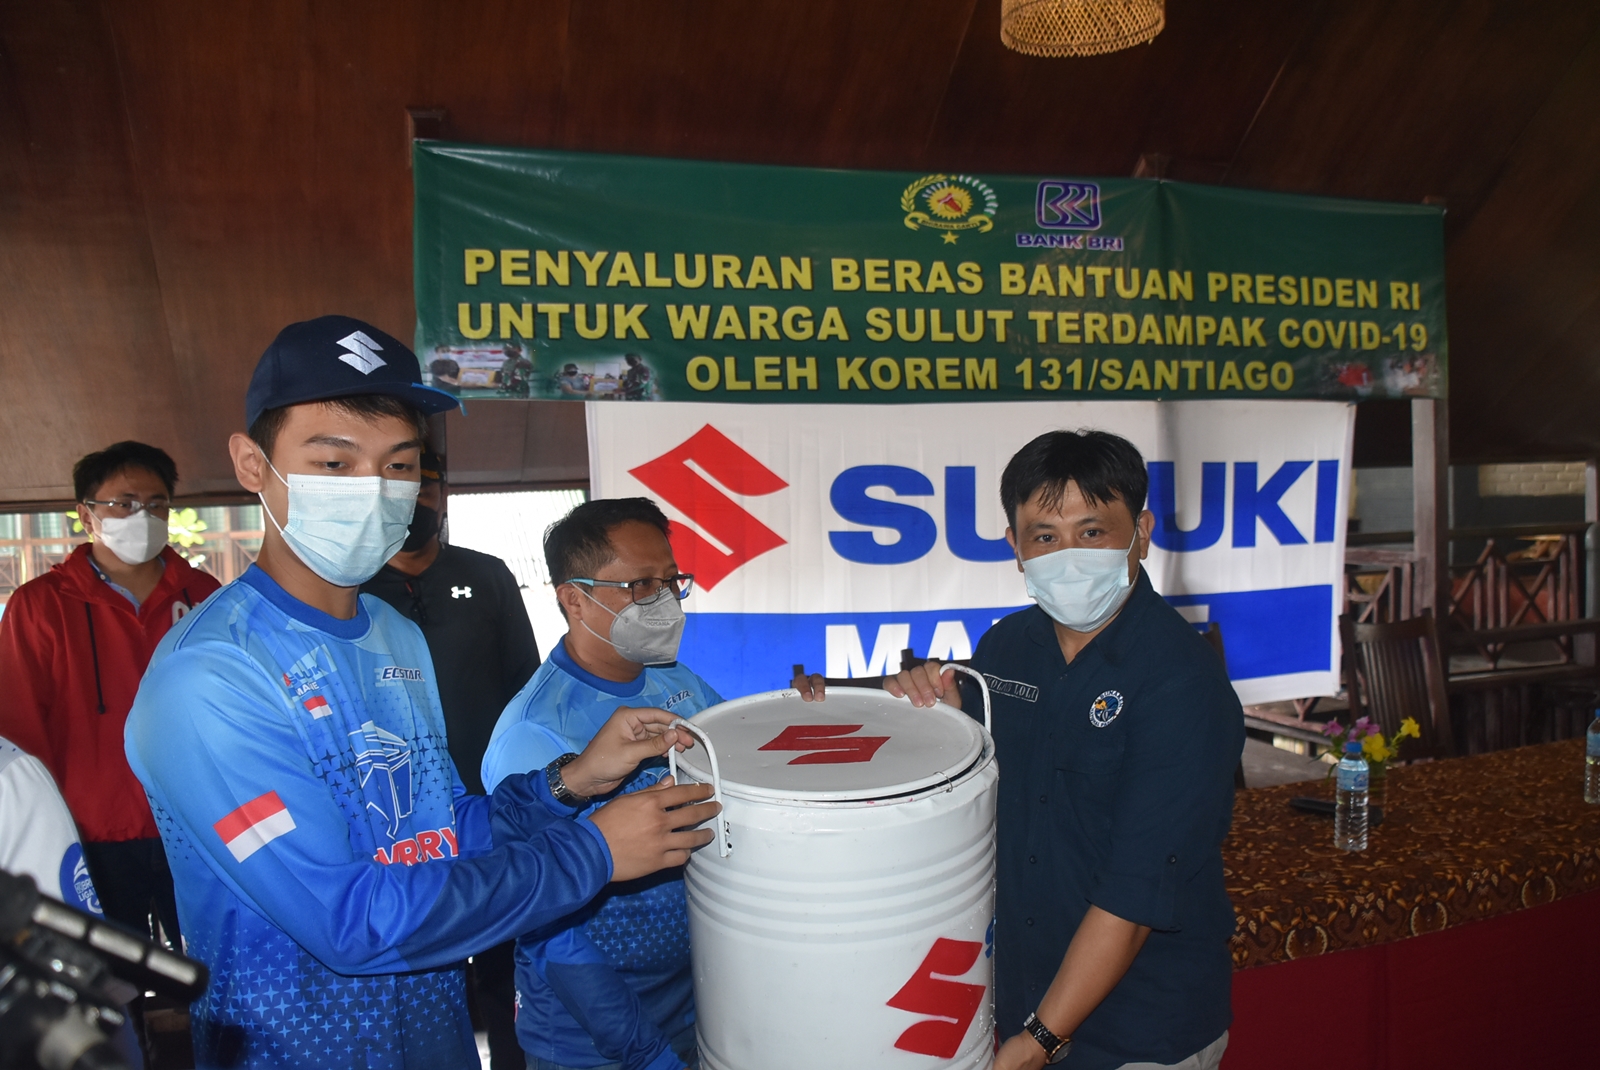 Suzuki Marine Kembali Hadirkan Service Campaign dan Clean Up The World di Manado